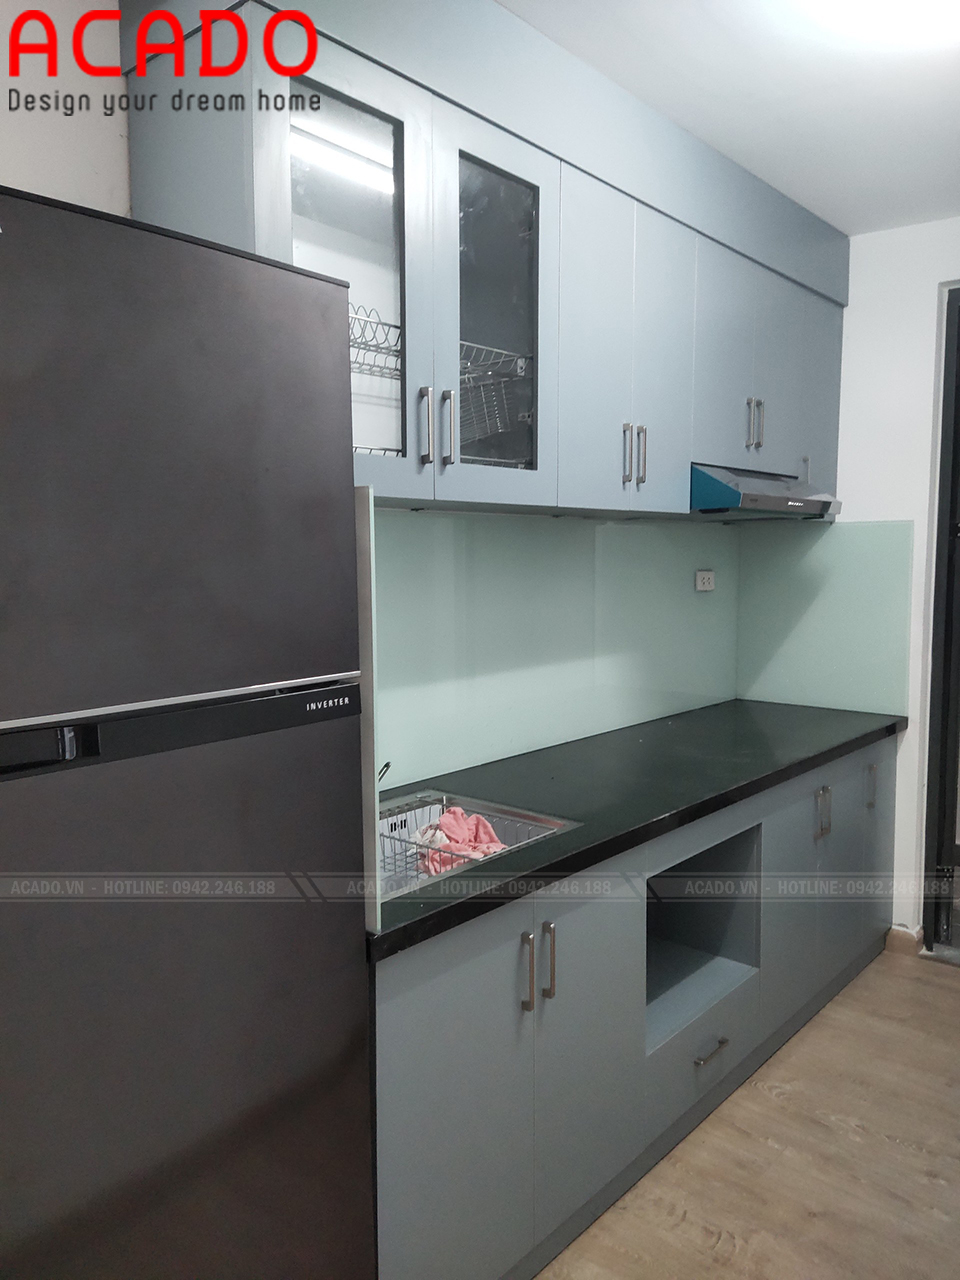 Tủ bếp thiết kế nhỏ gọn thích hợp với không gian chung cư